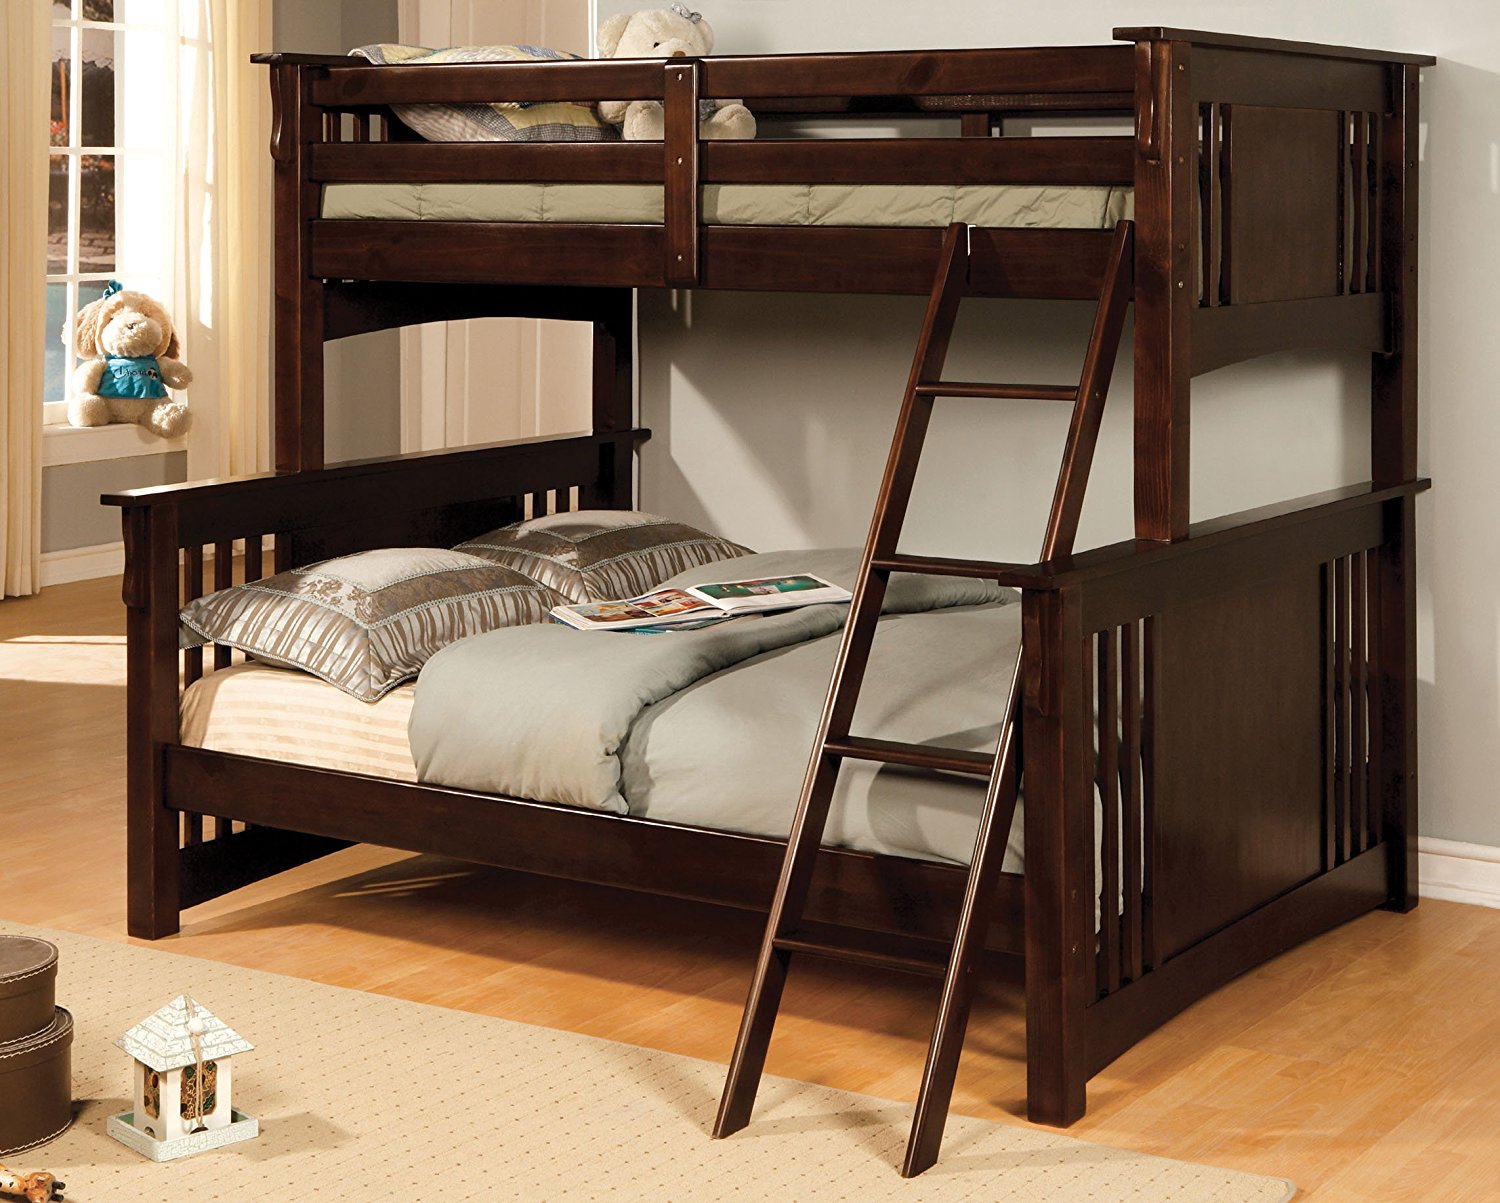 Furniture of America Concord Bunk Bed, Twin/Full, Espresso